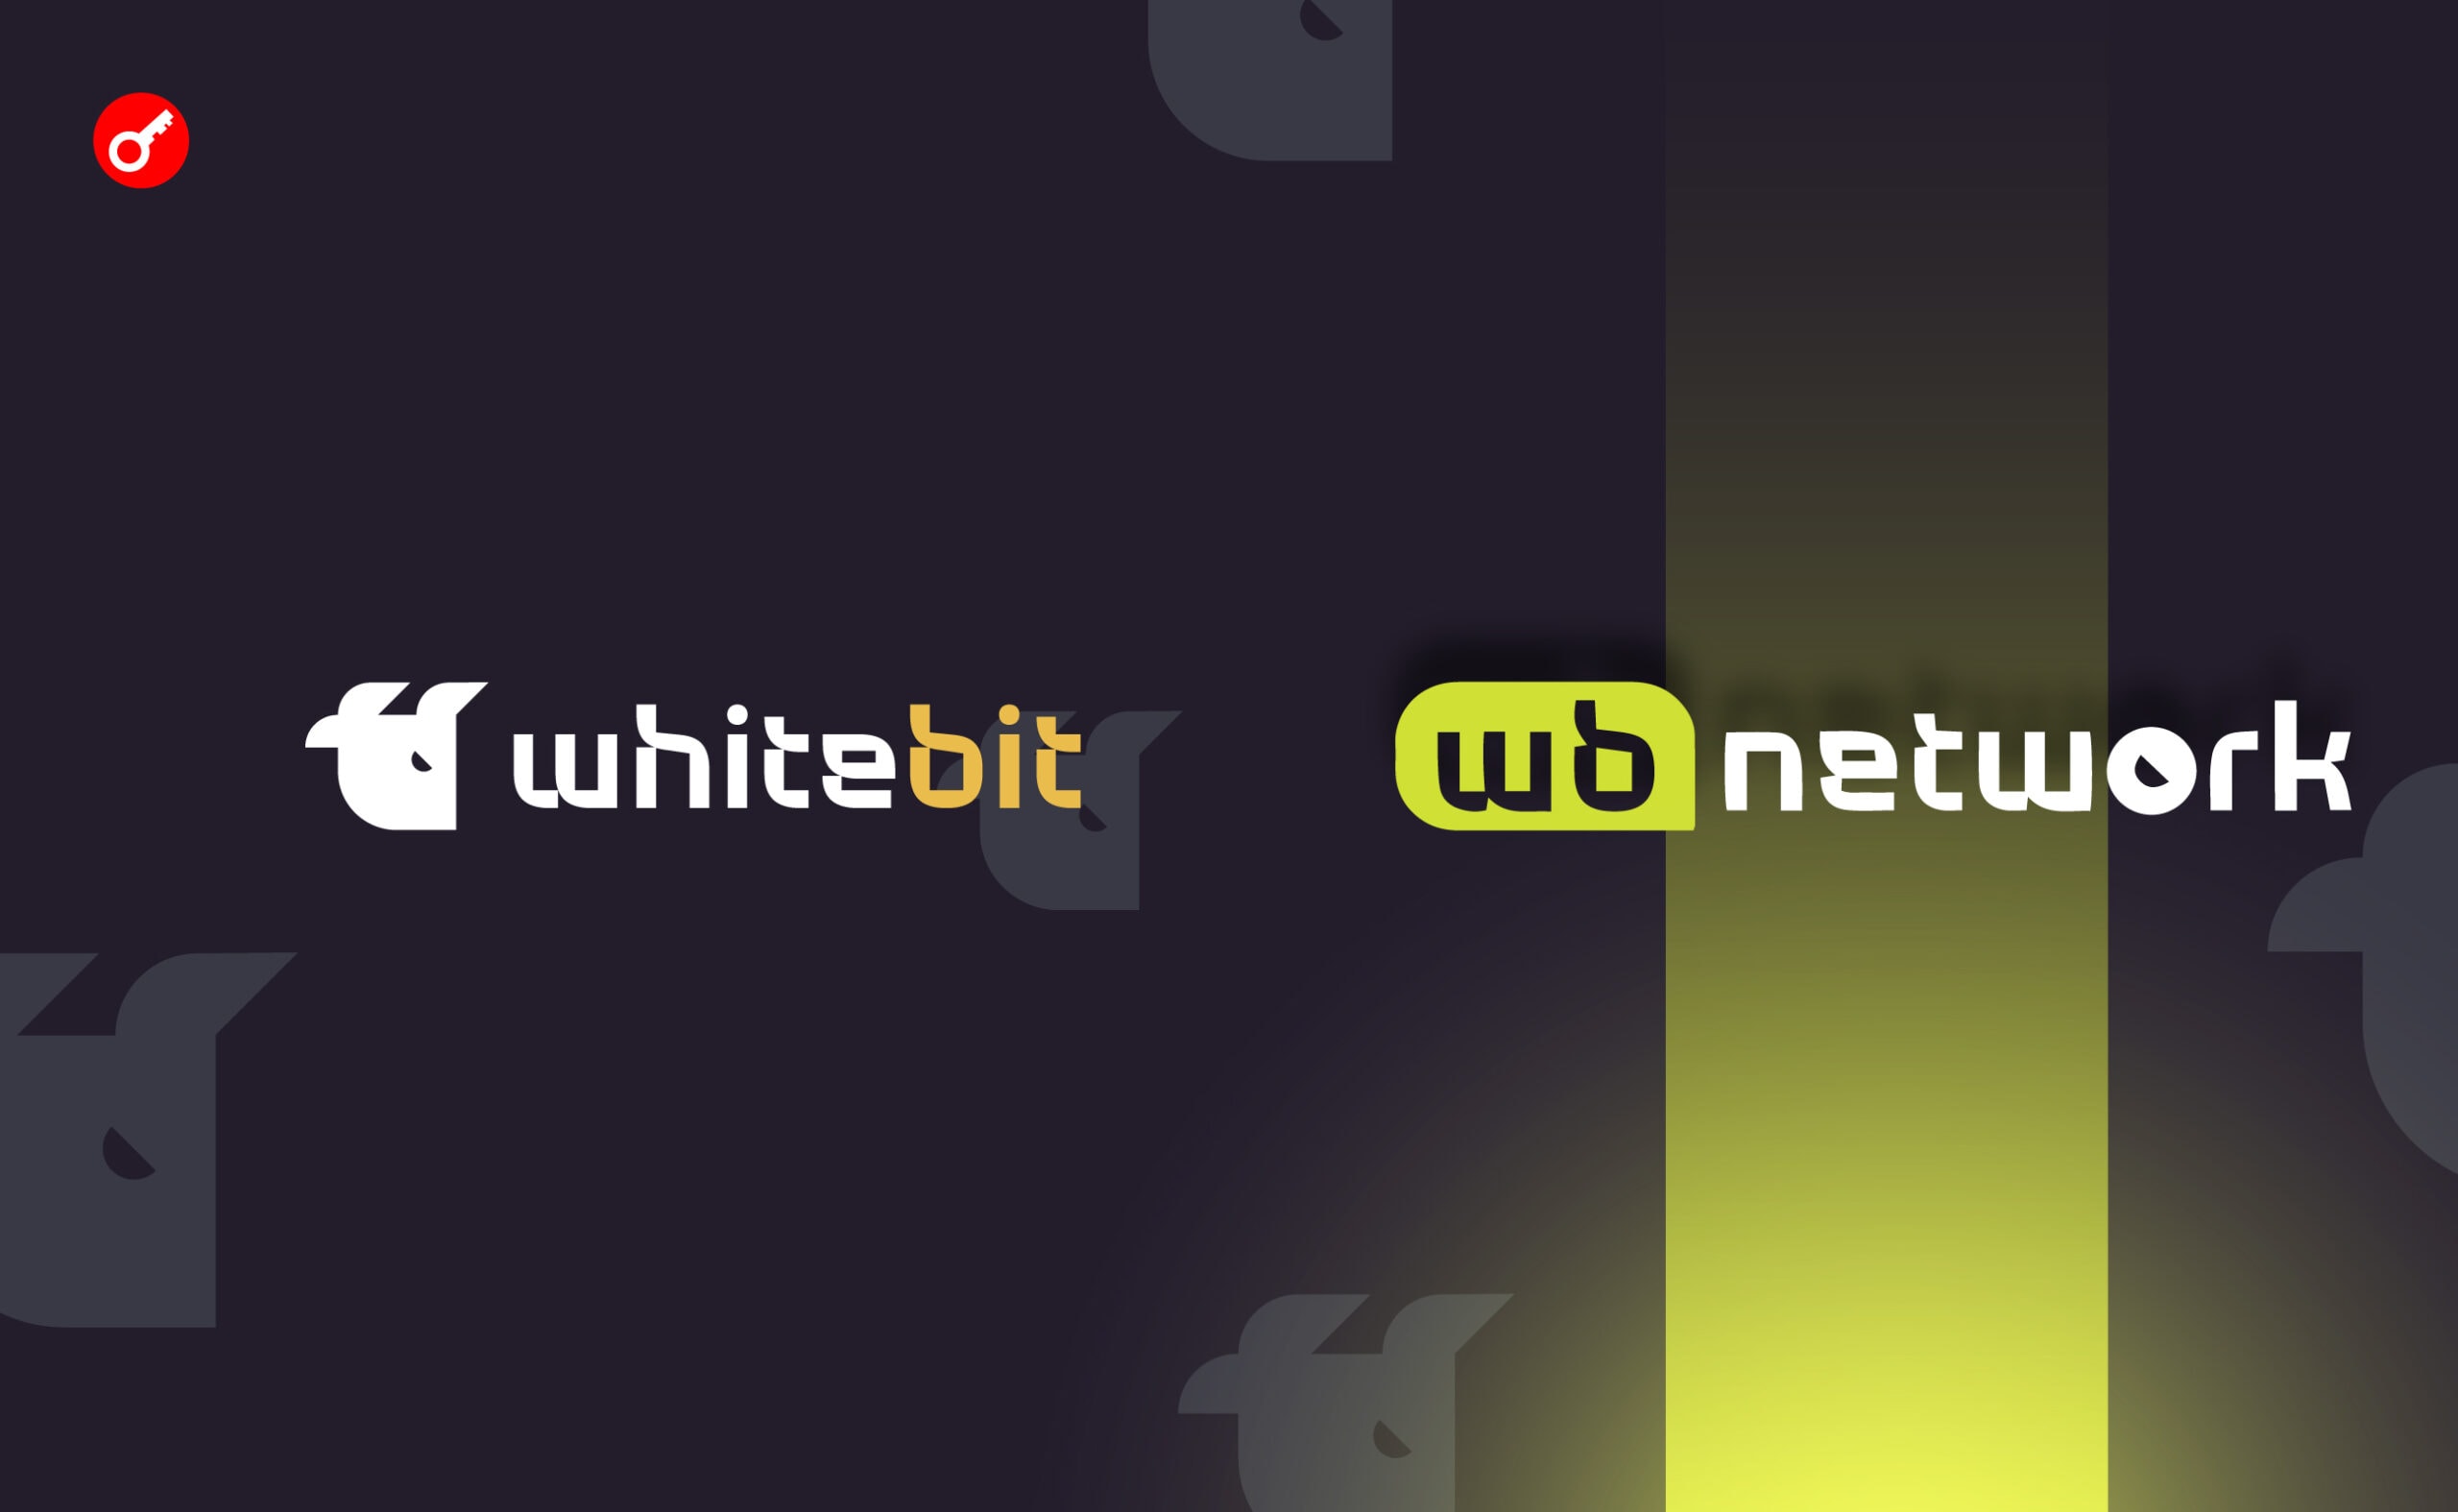 WhiteBIT оголосила про запуск мейннету WB Network. Головний колаж новини.